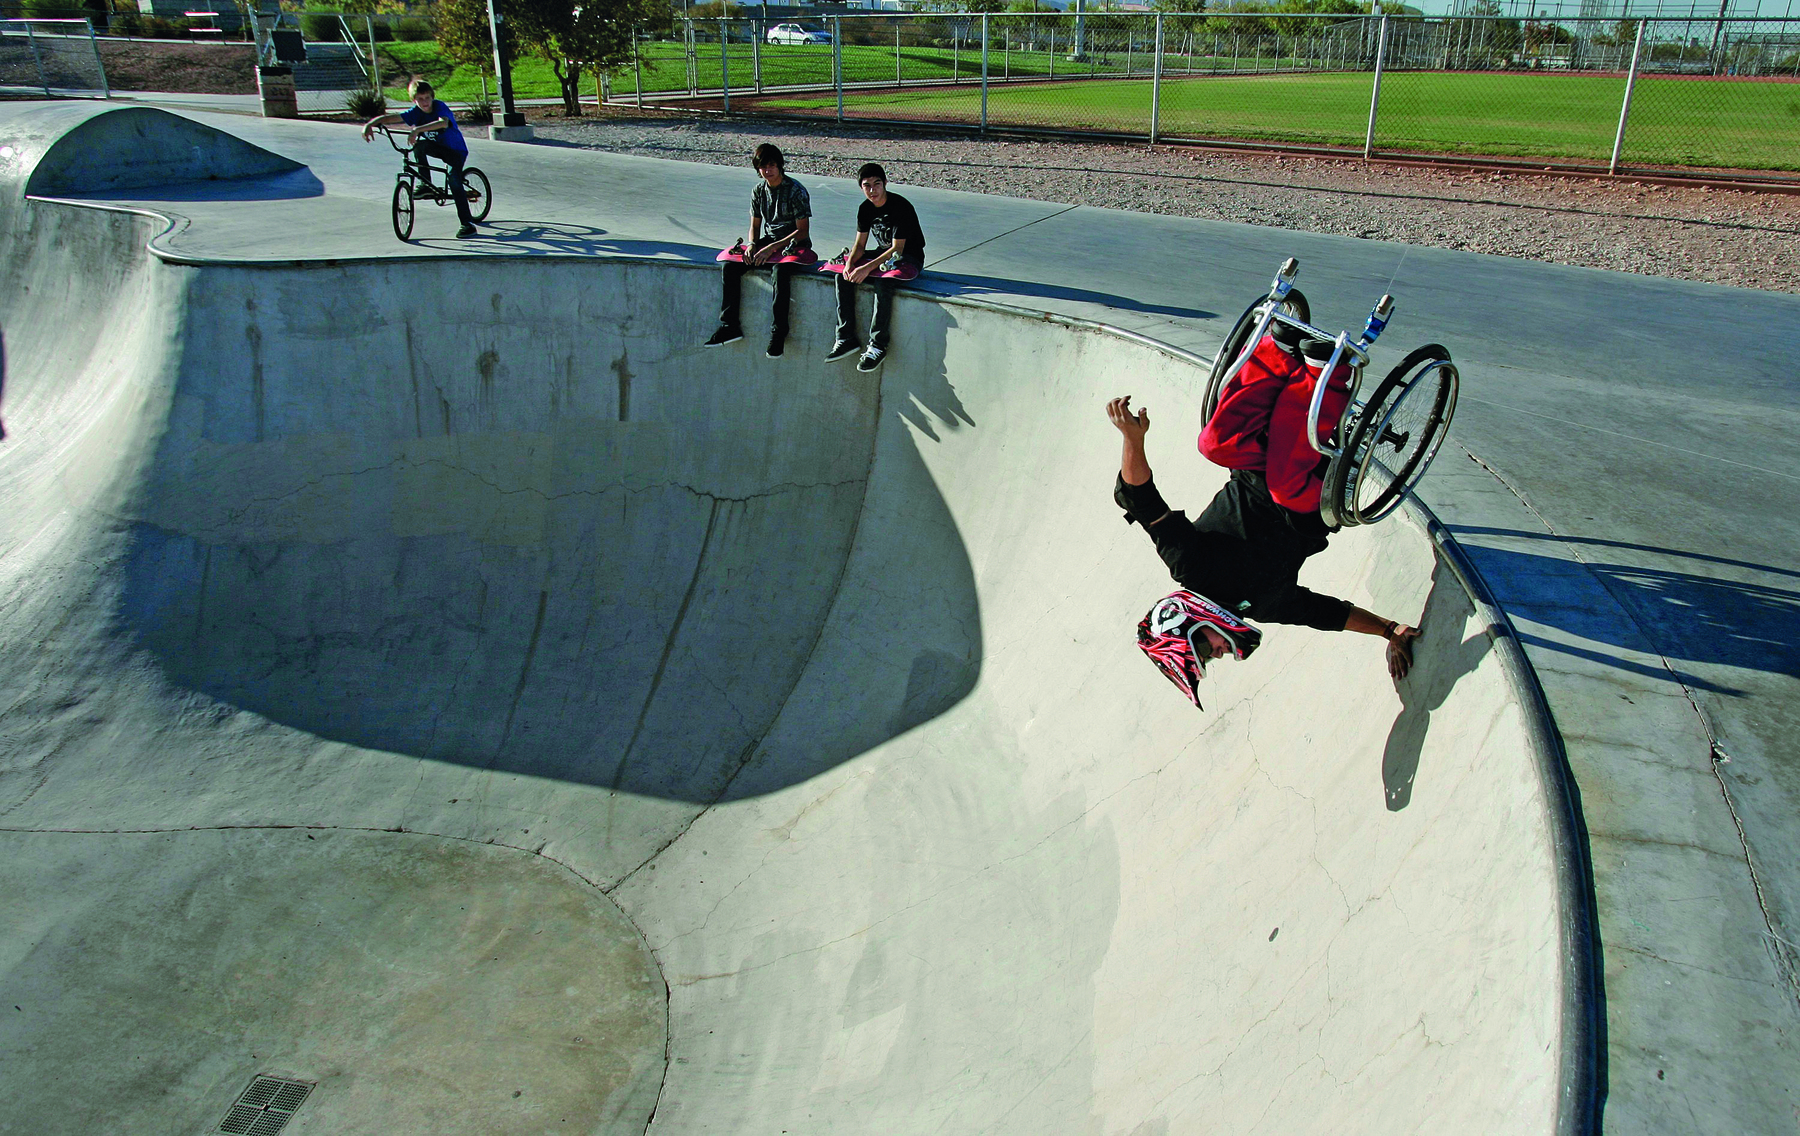 Fotografia. Um homem usando capacete e sentado em uma cadeira de rodas está no topo de uma pista de skate com a mão apoiada na borda e a cadeira com as rodas para o alto. Ao lado, duas pessoas sentadas na borda da pista estão observando.